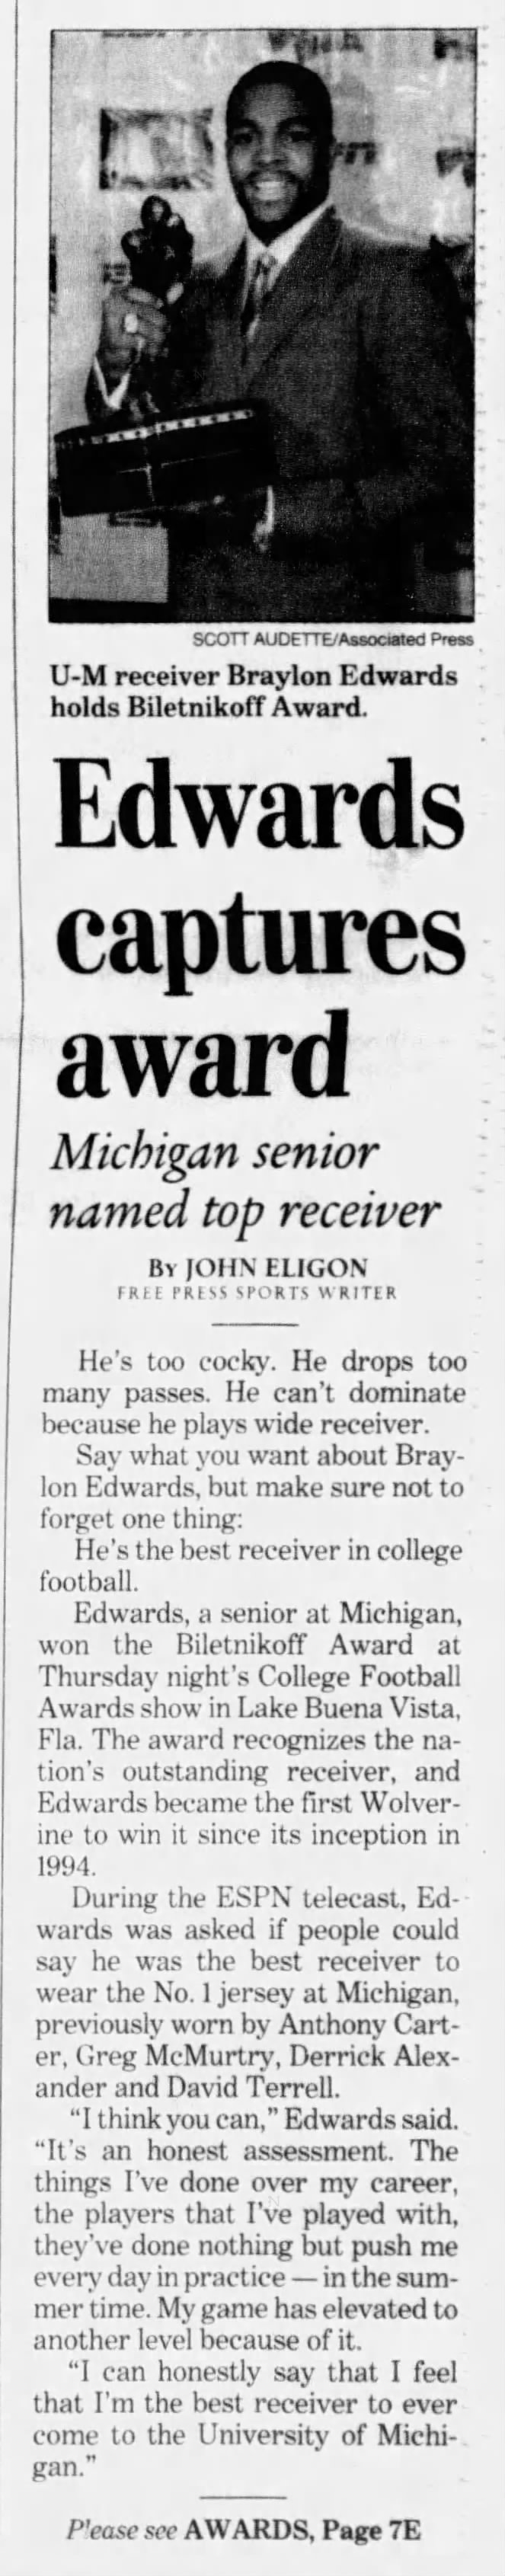 Edwards captures award: Michigan senior named top receiver